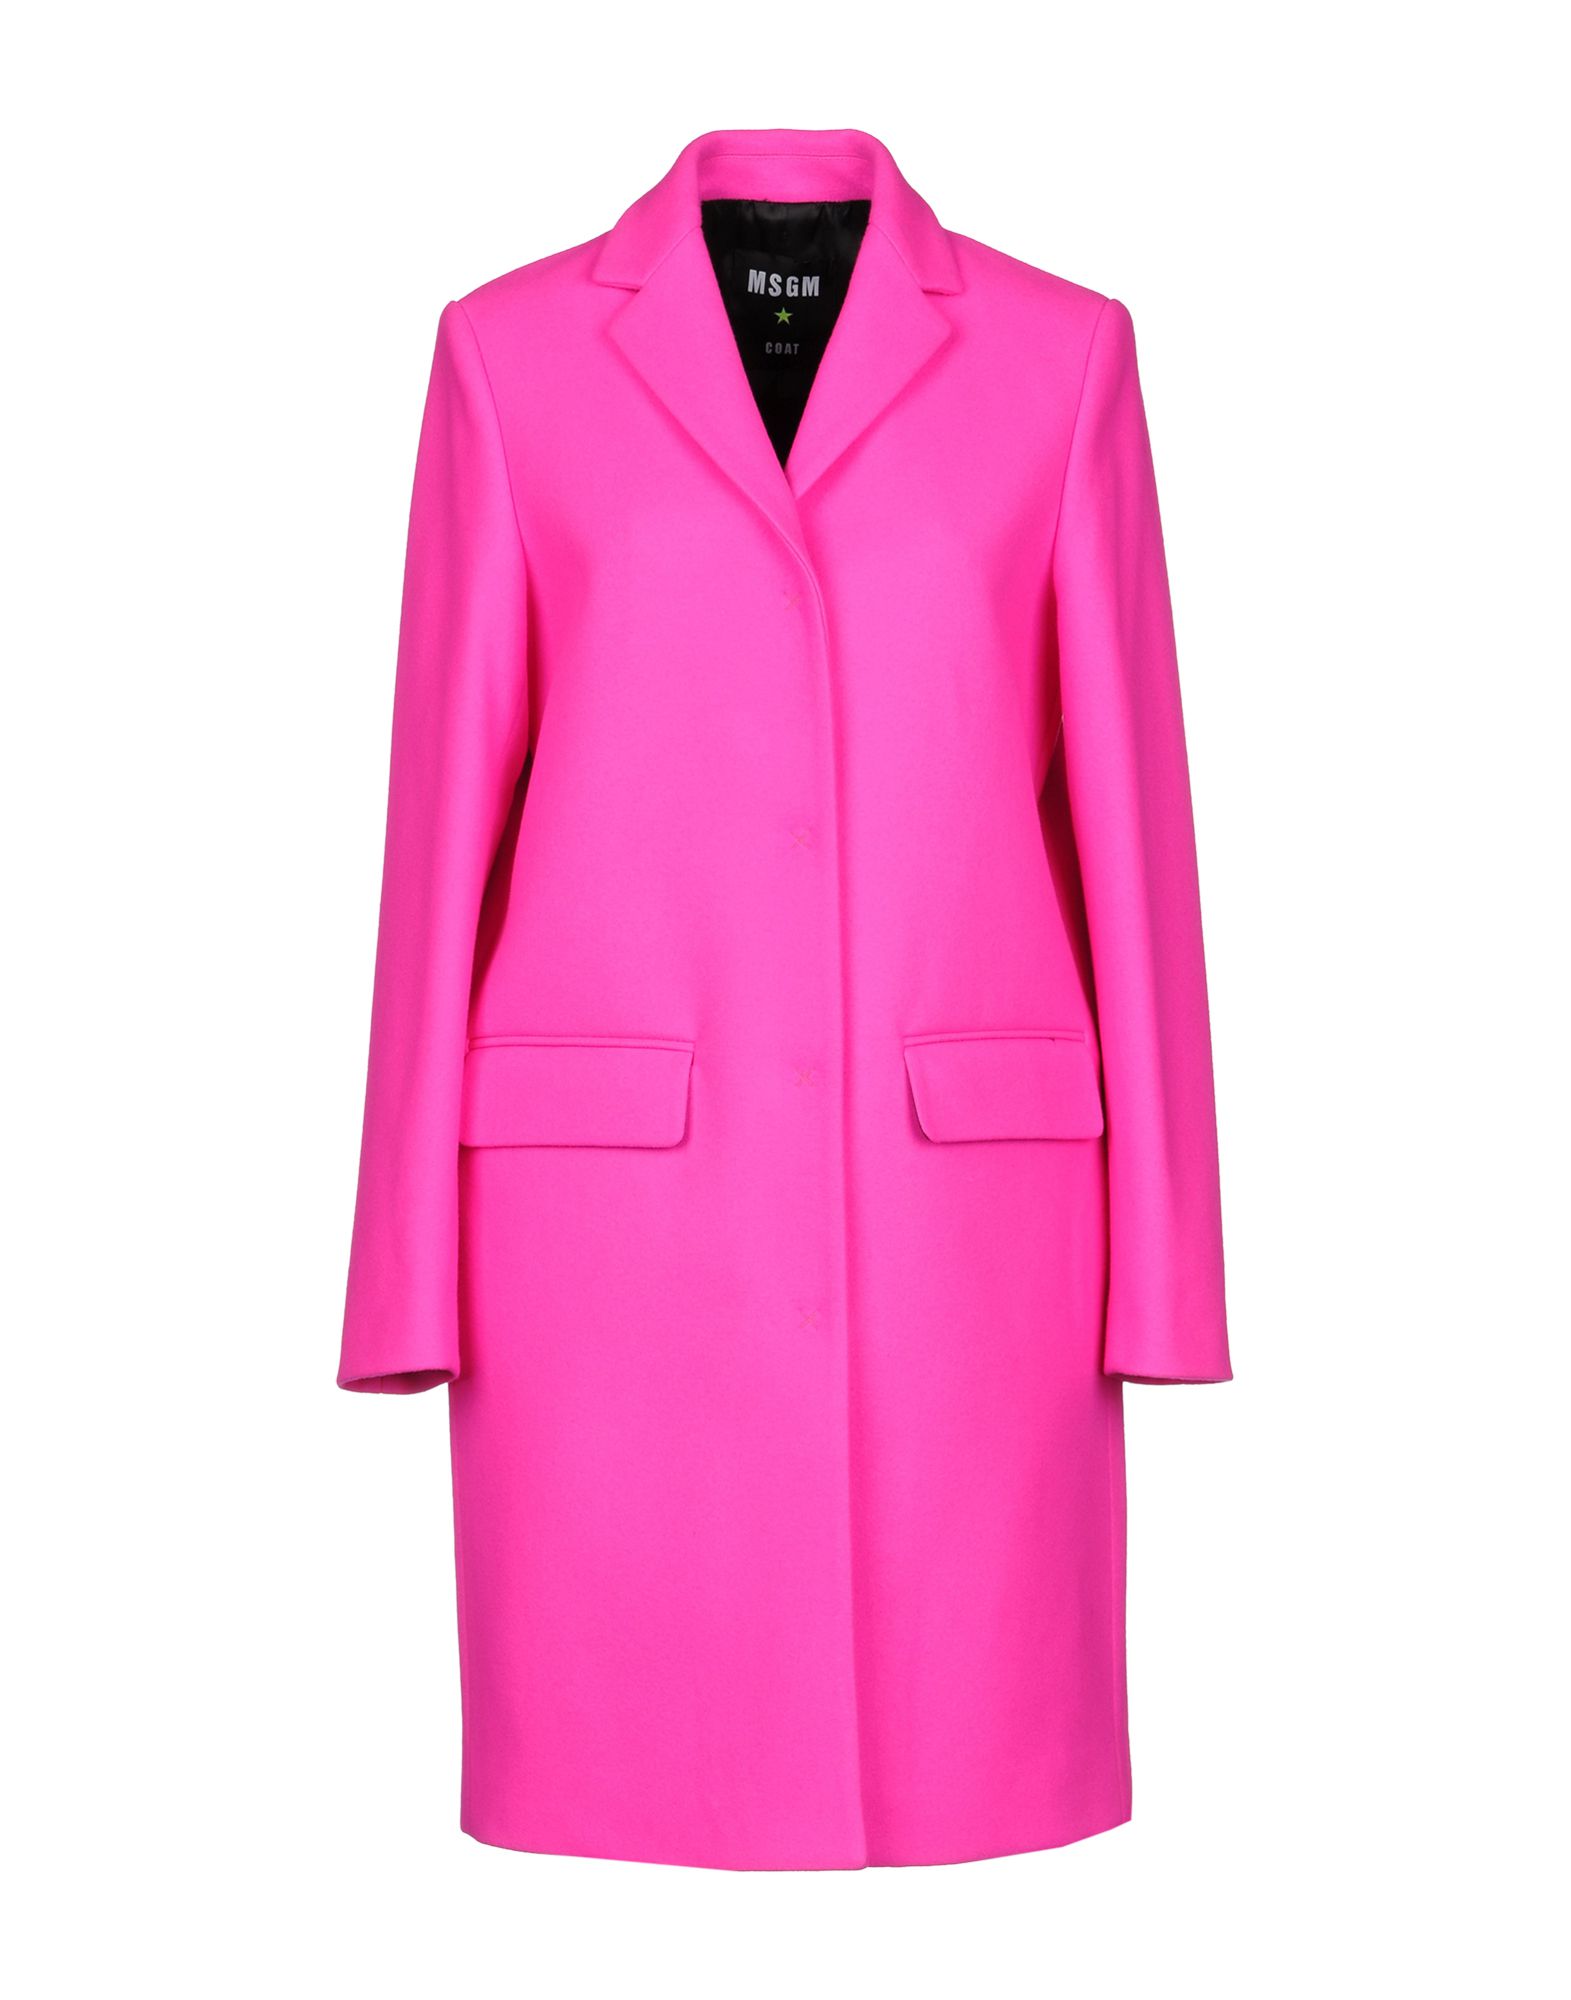 Цветные пальто женские